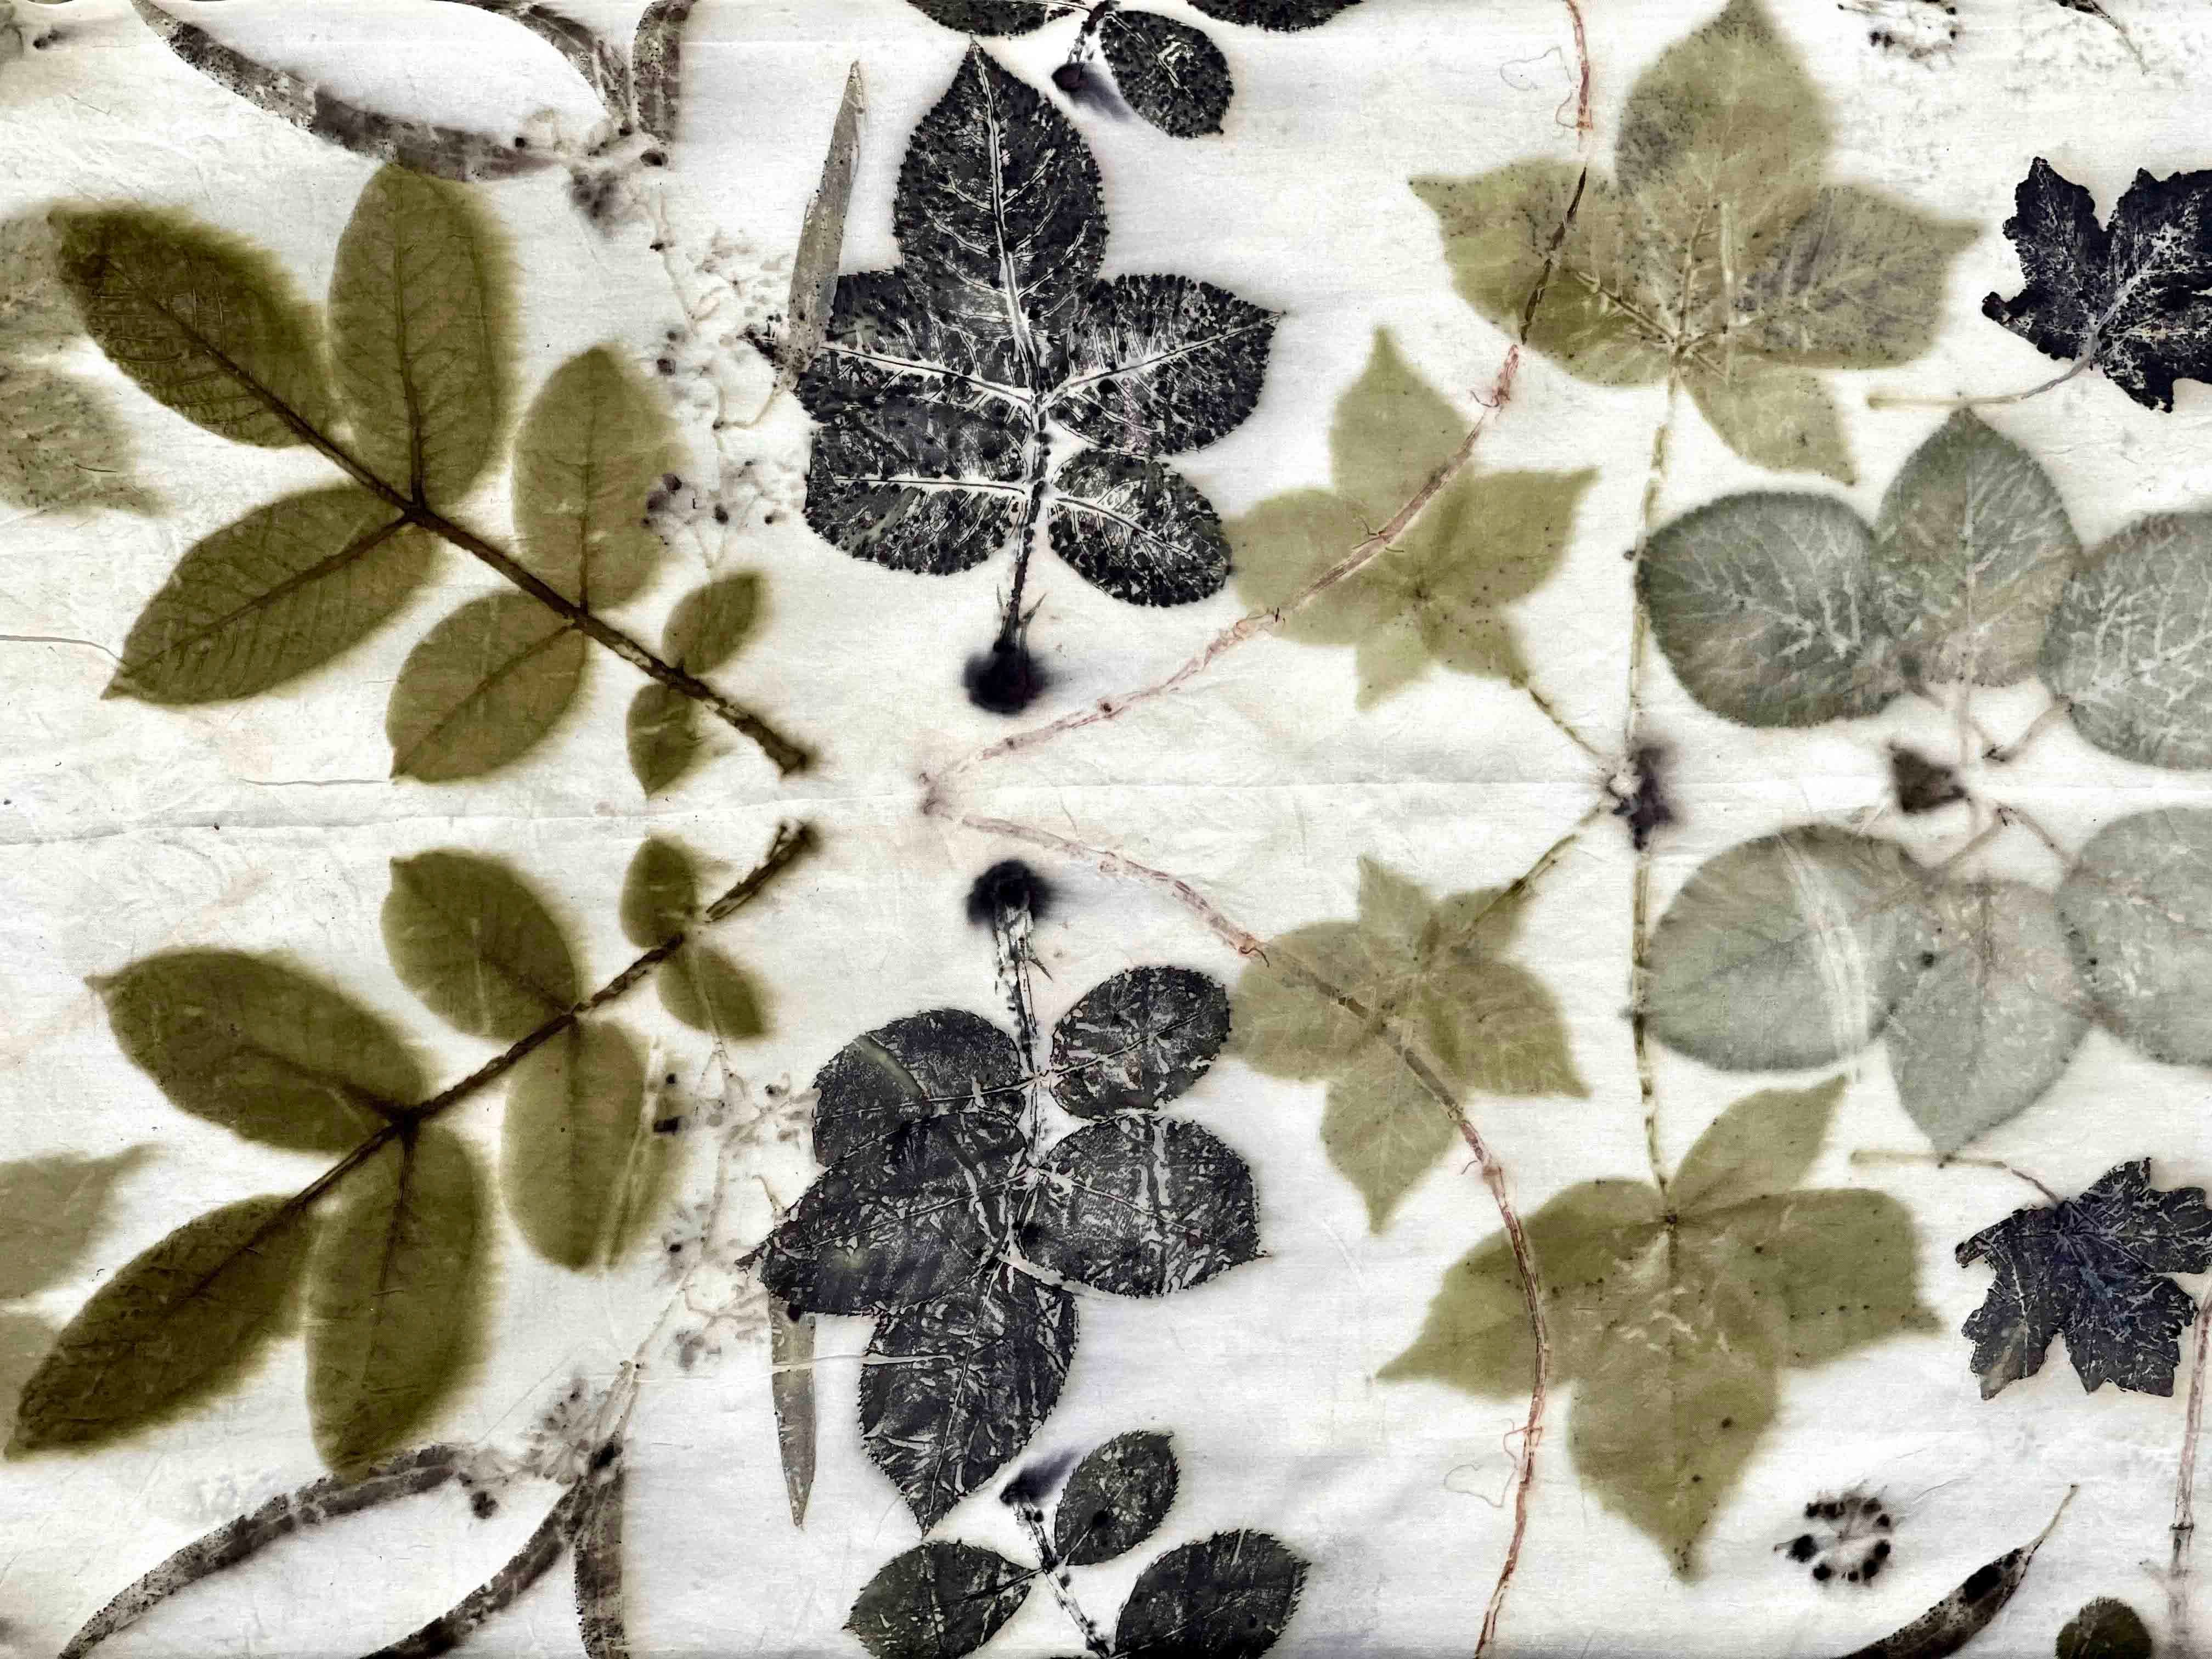 Silk Scarves - Garden Collection